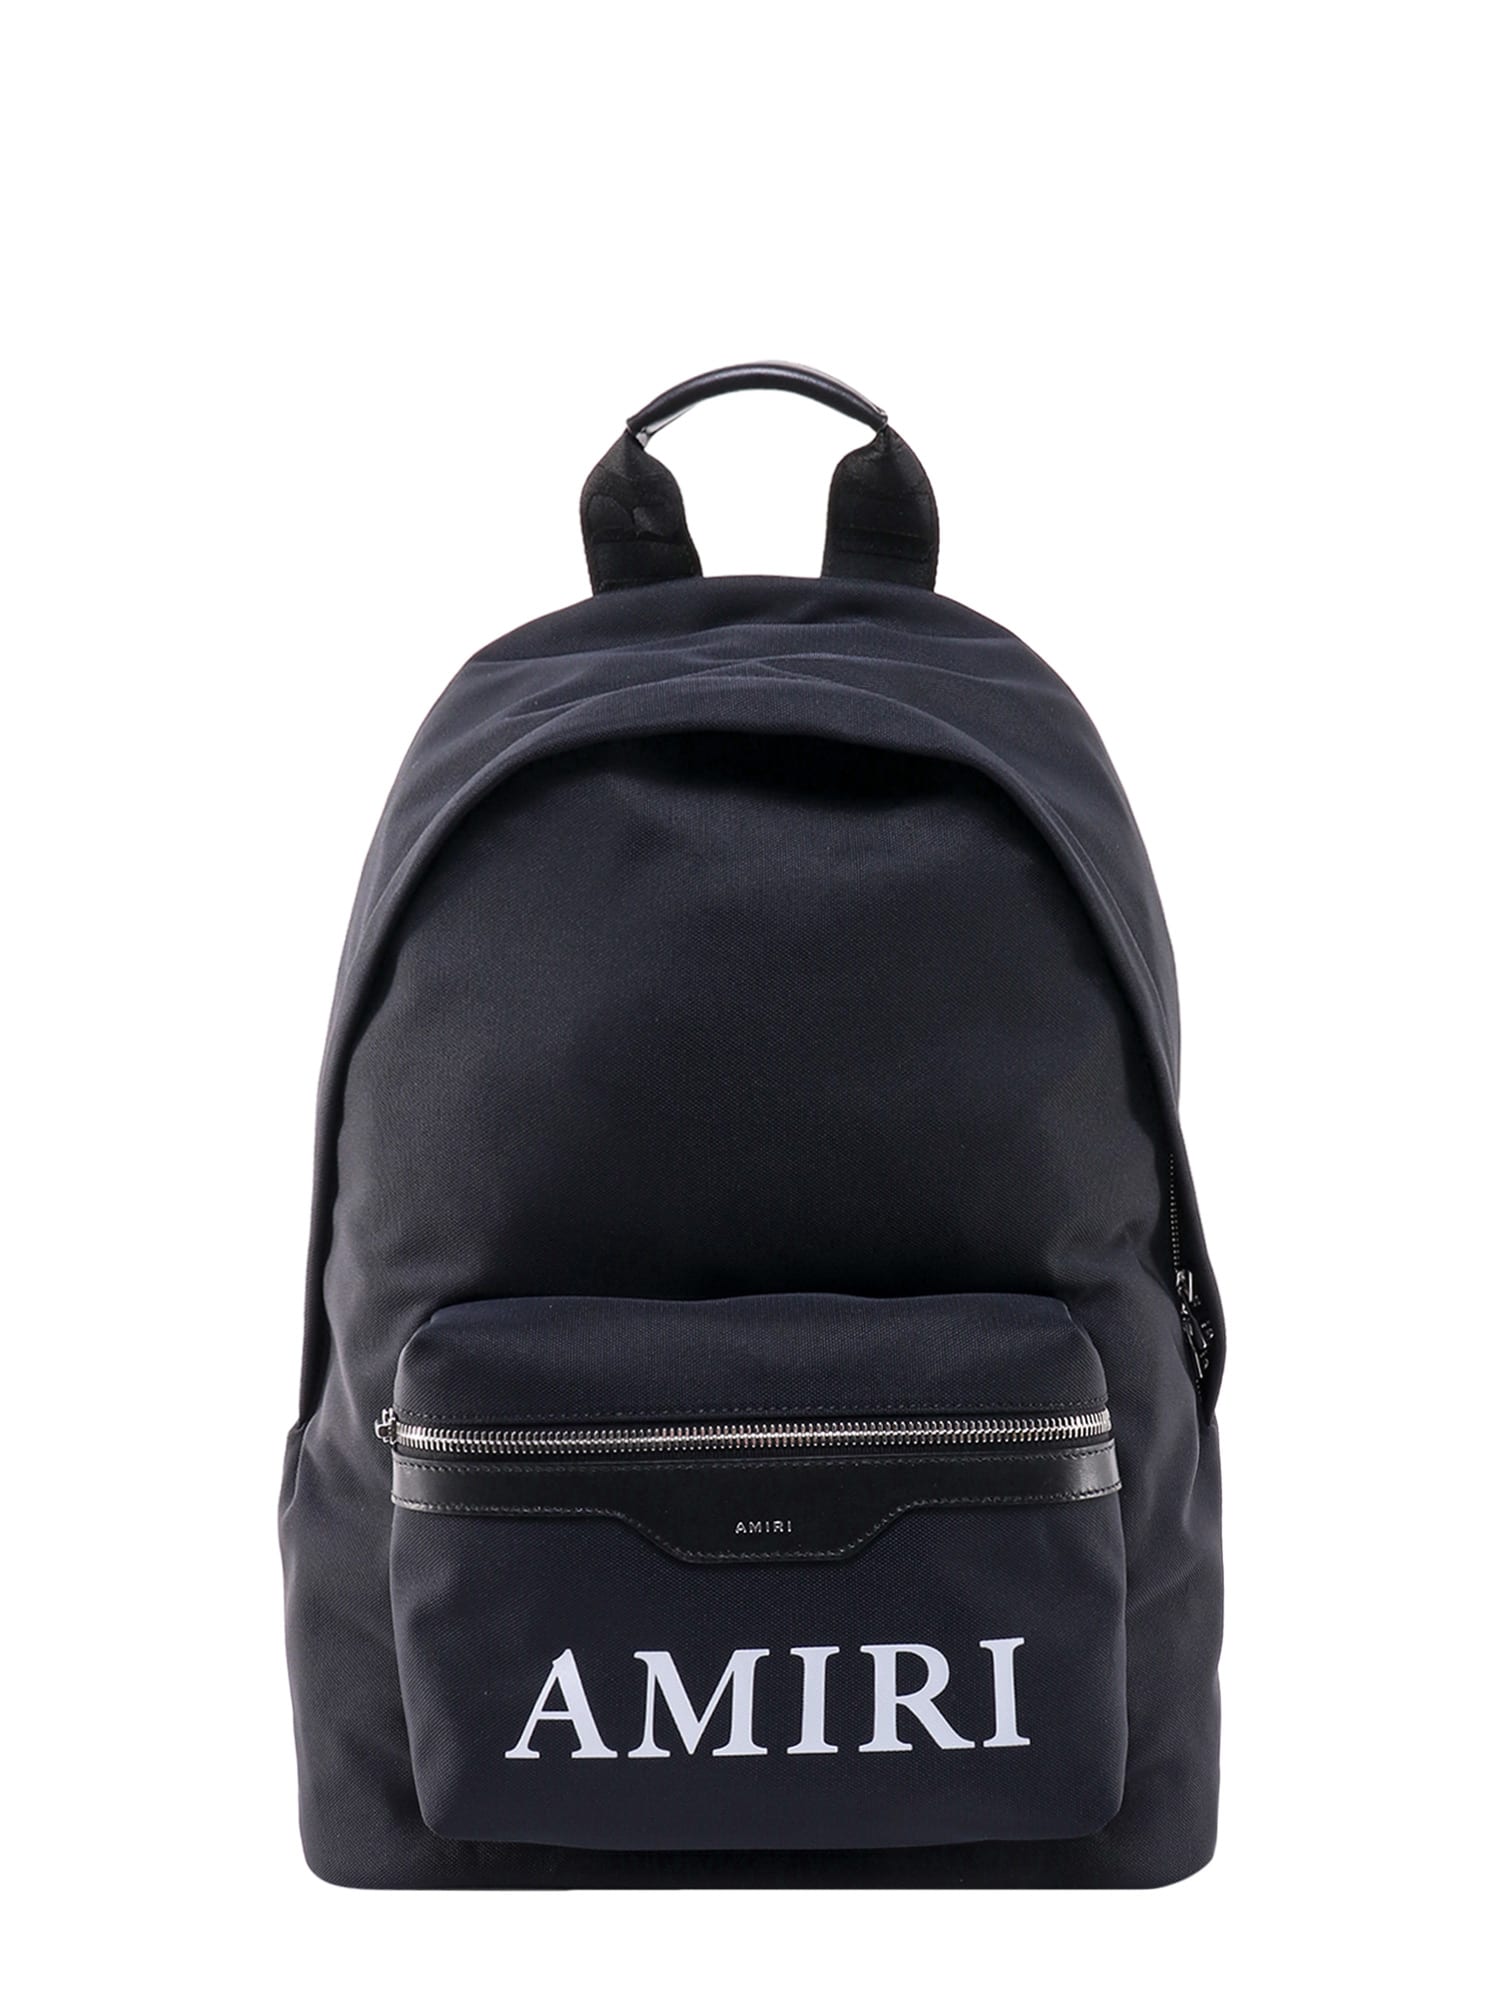 Amiri Backpack In Black